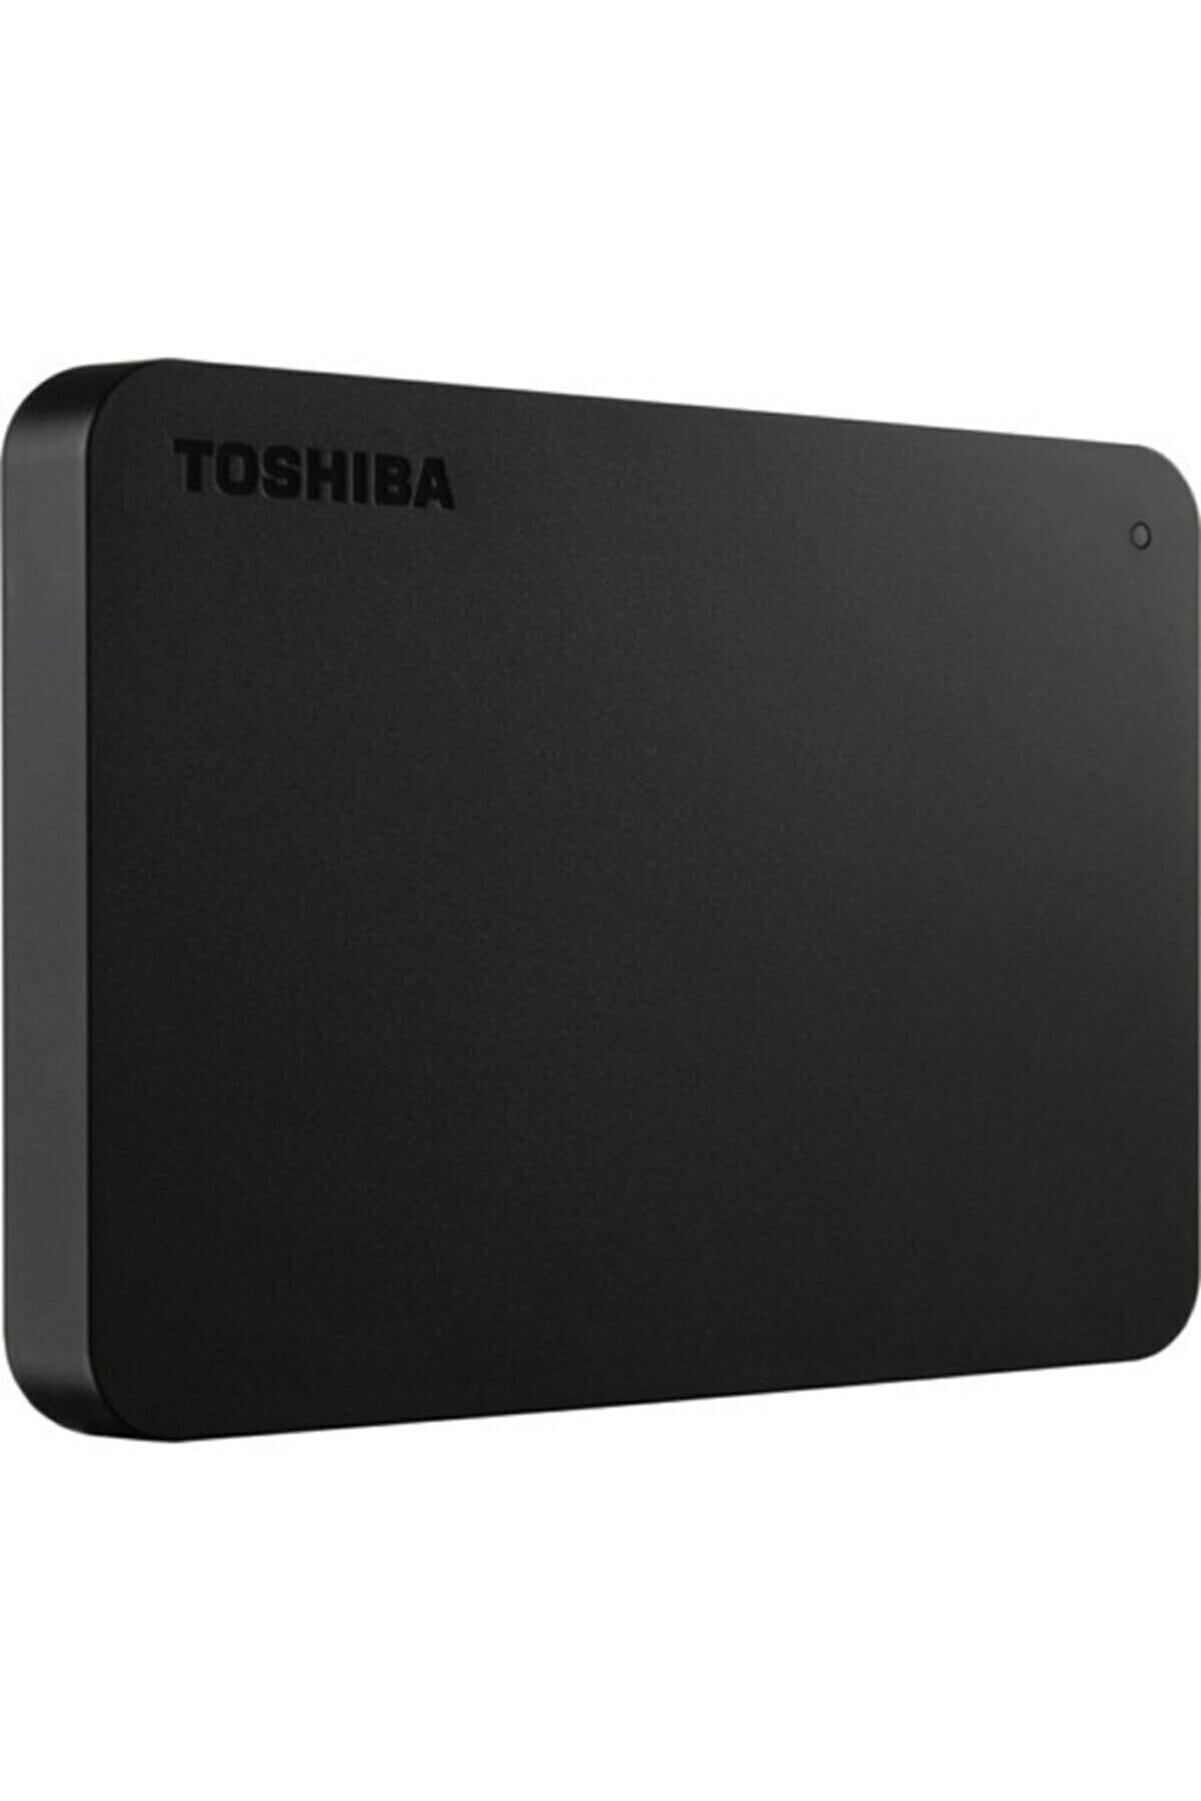 Toshiba Taşınabilir Disk - 1 Tb - 2.5 Inç / Usb 3.0